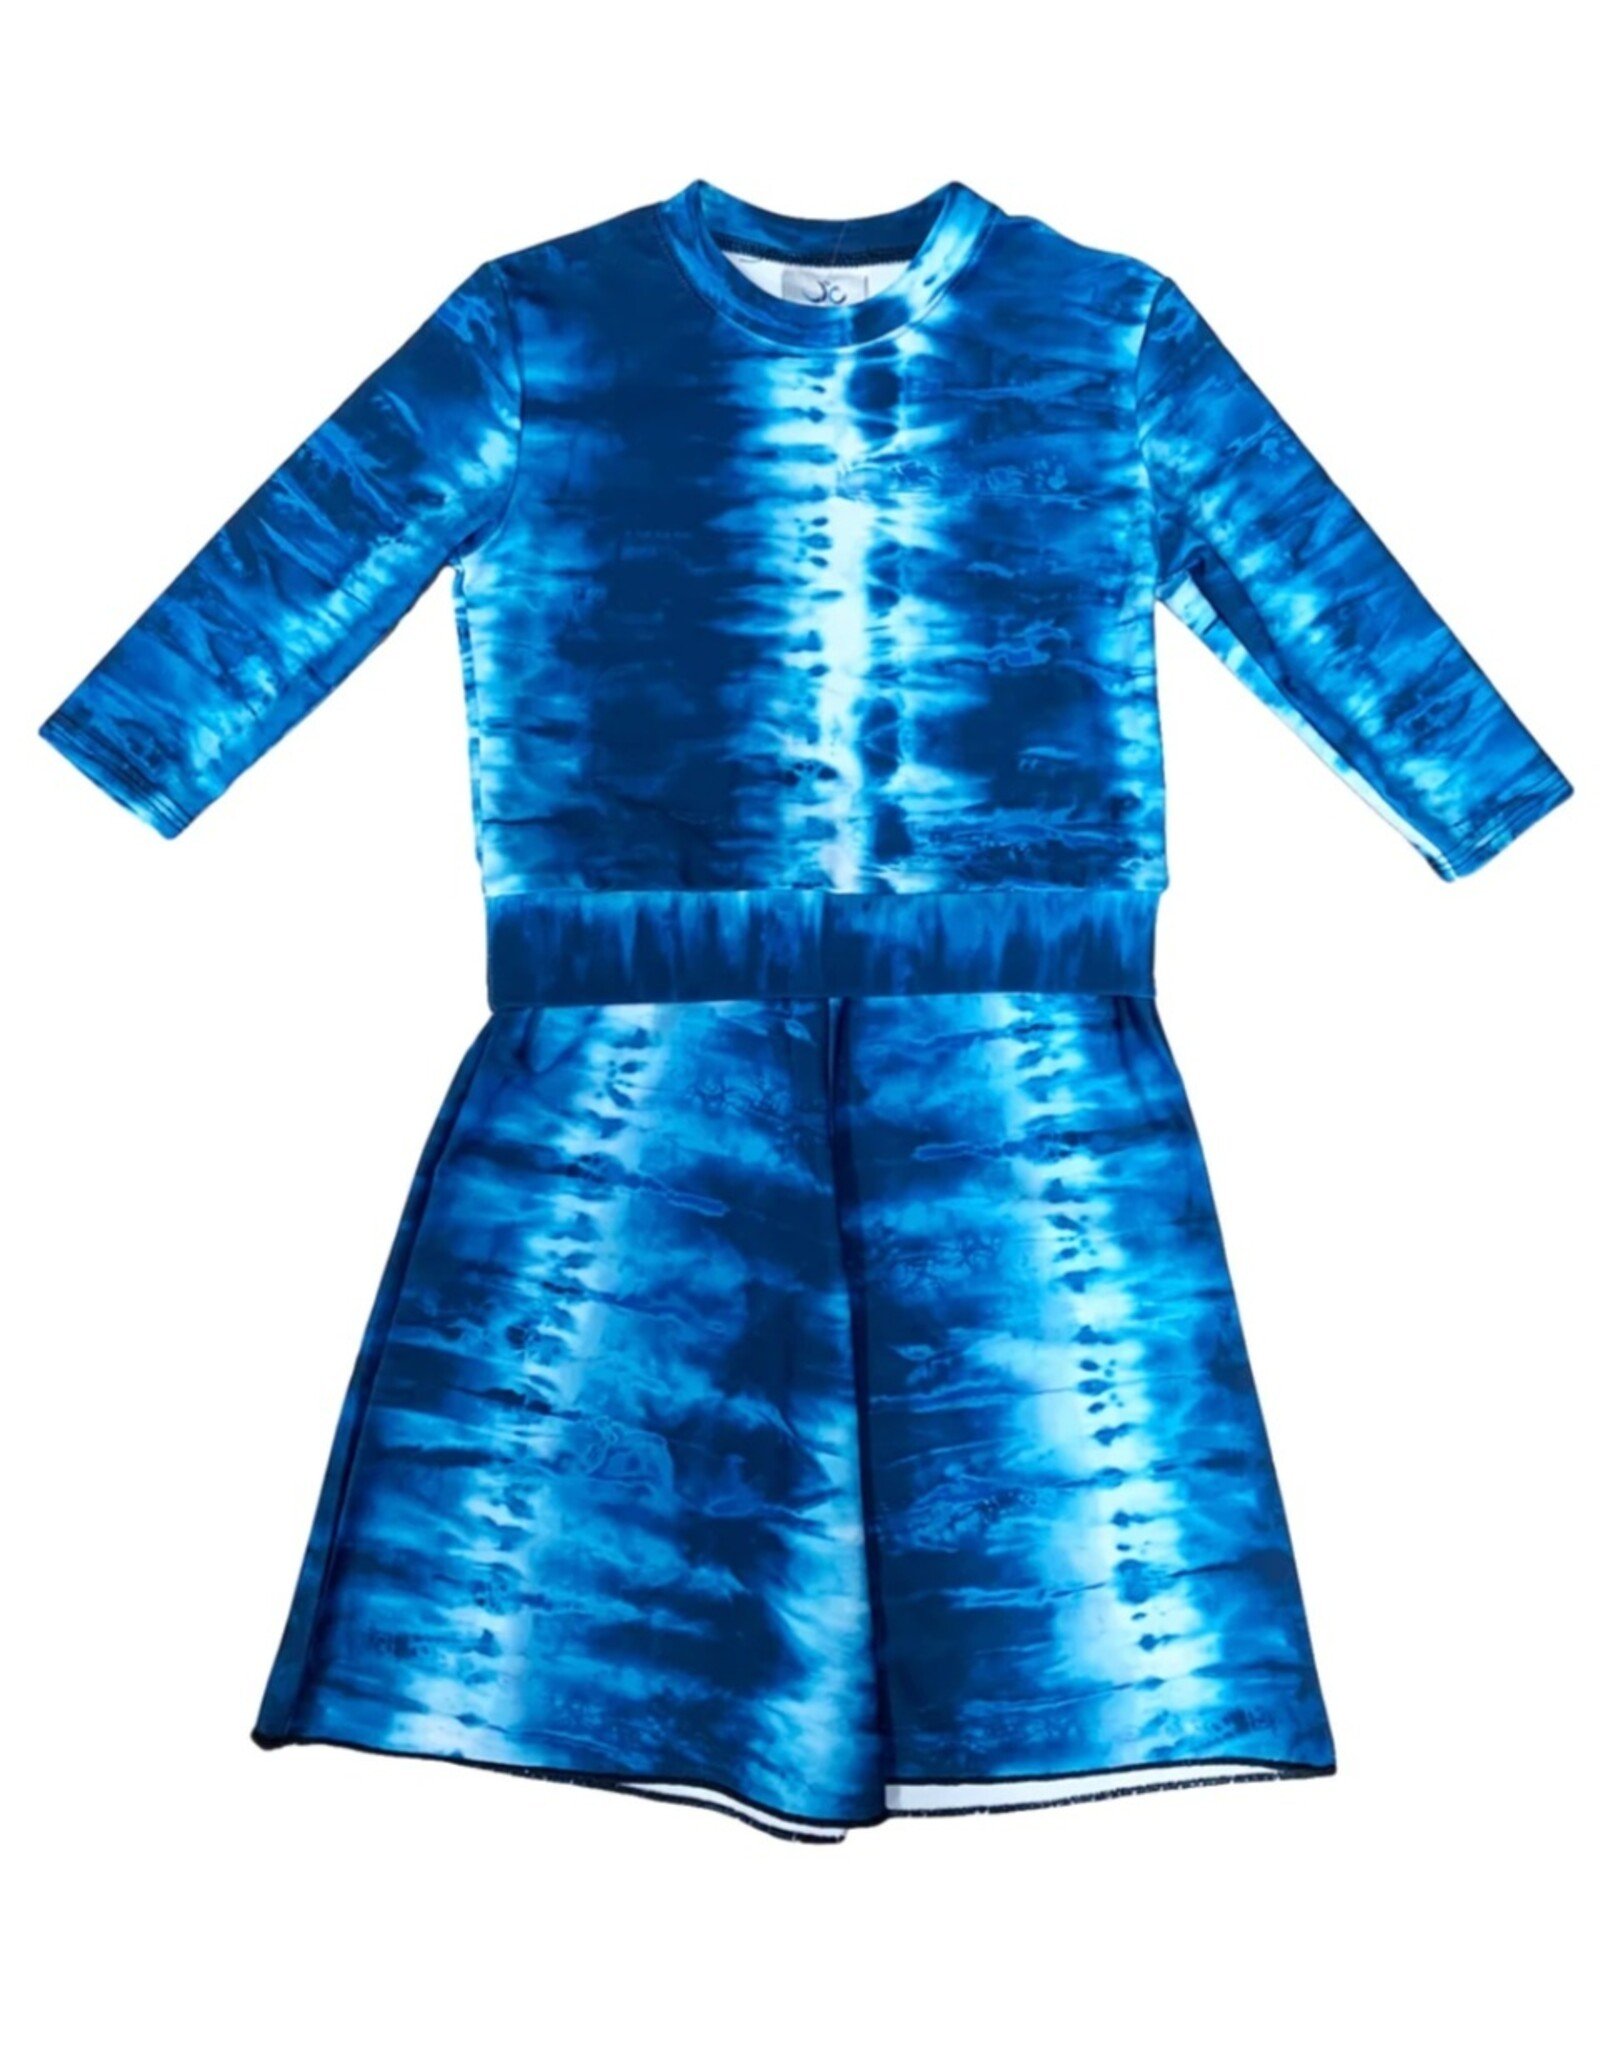 Undercover Waterwear Undercover Waterwear Kids Blue Tie Dye Swim Dress